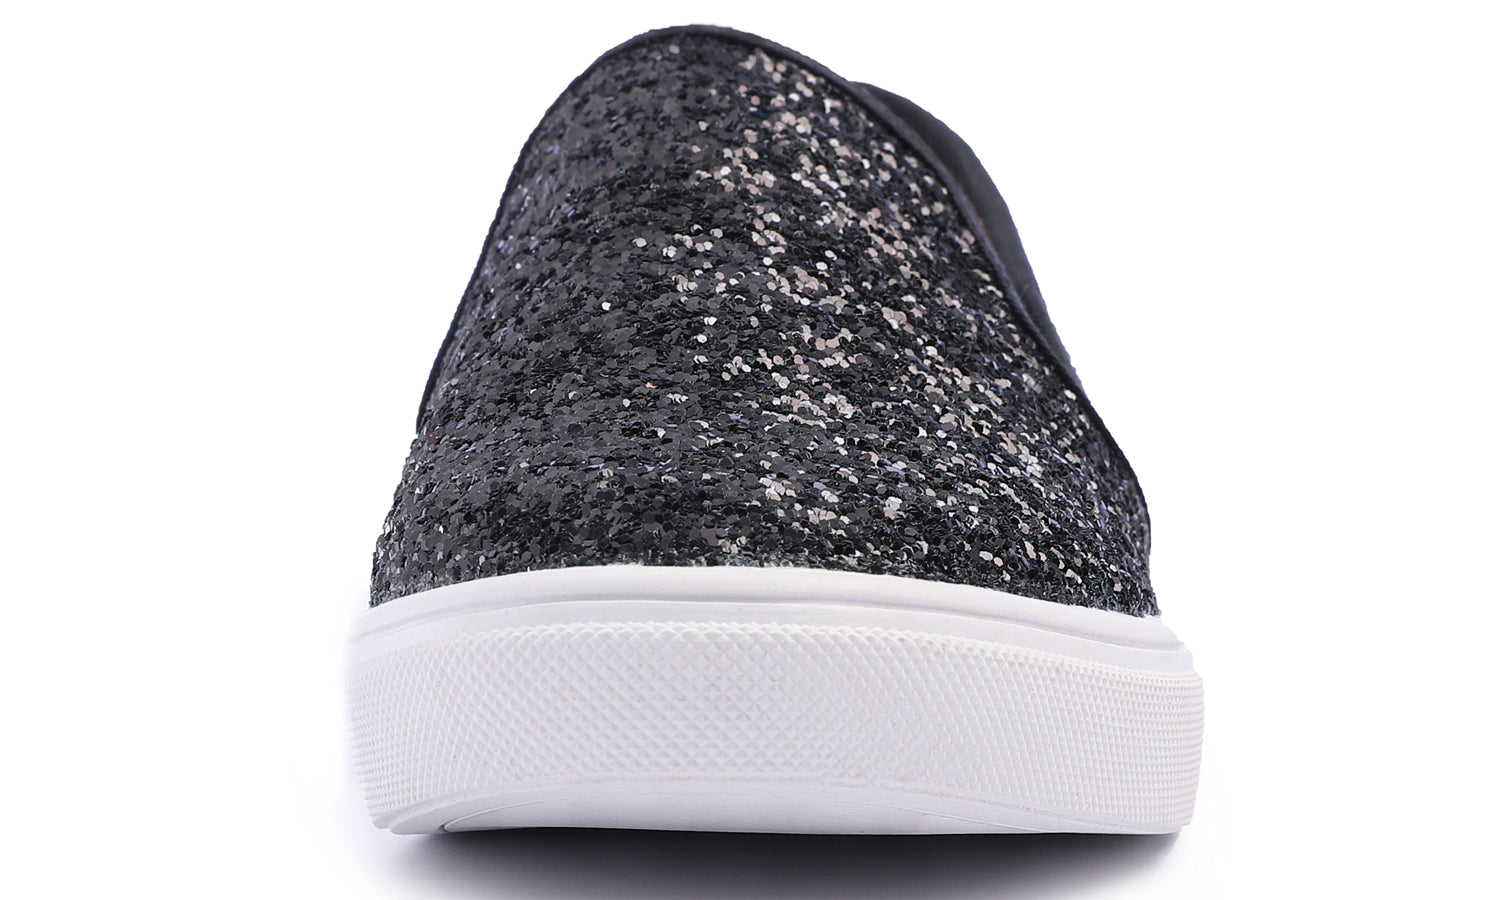 Feversole Women's Glitter Black Slip On Sneaker Casual Flat Loafers